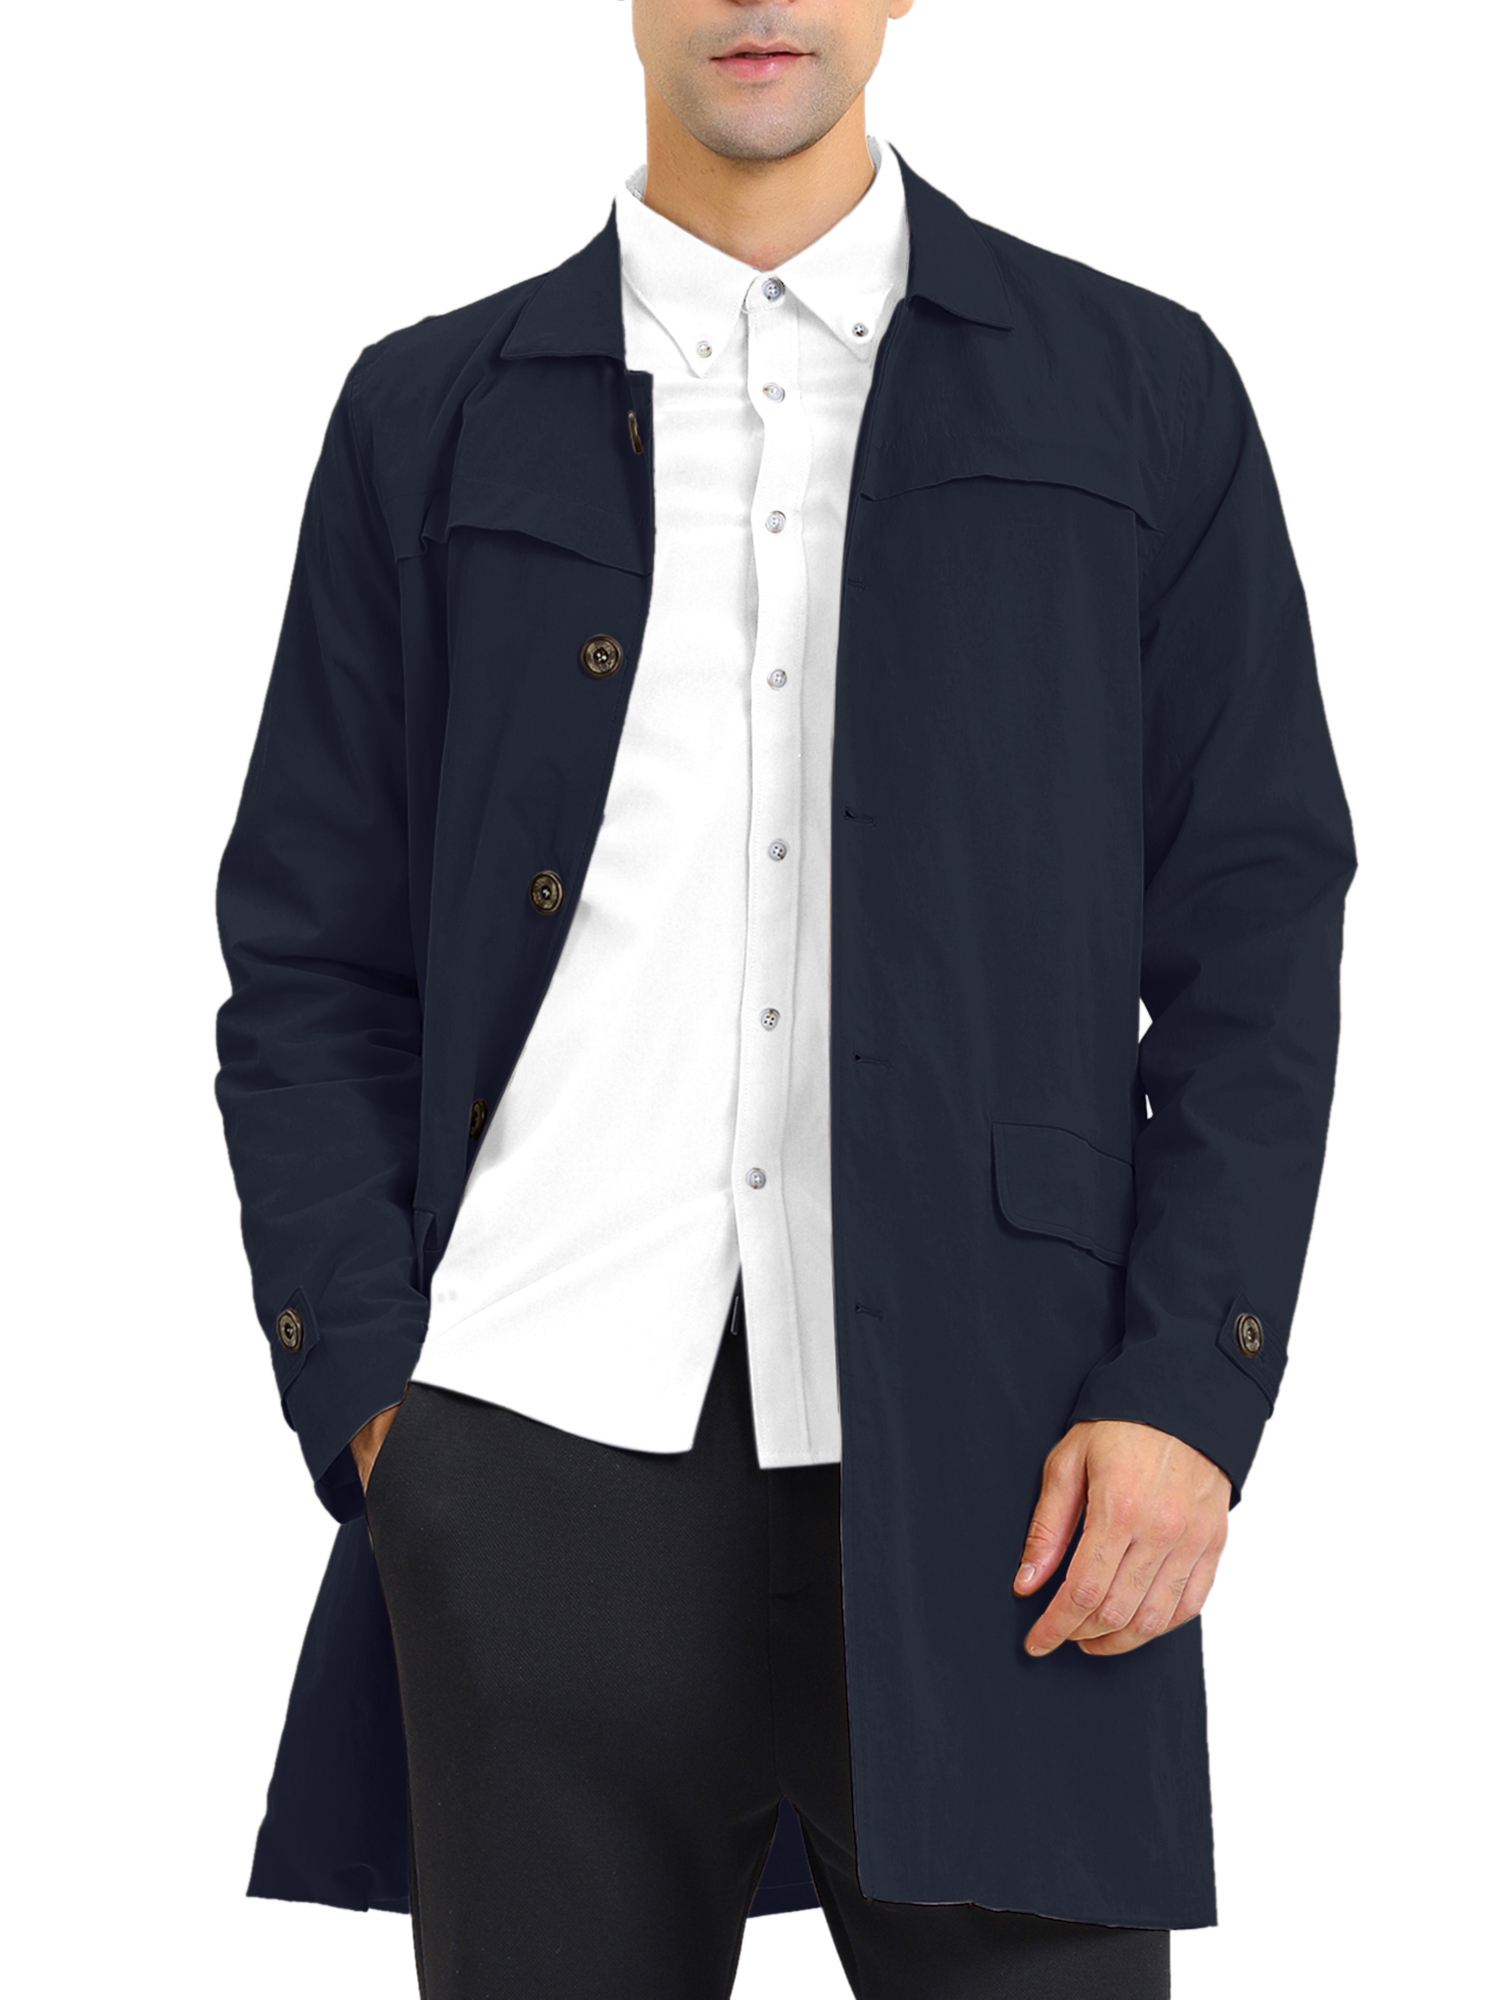 MODA NOVA Big & Tall Men's Trench Coat Single Breasted Jacket Overcoat Navy Blue XLT - image 1 of 6